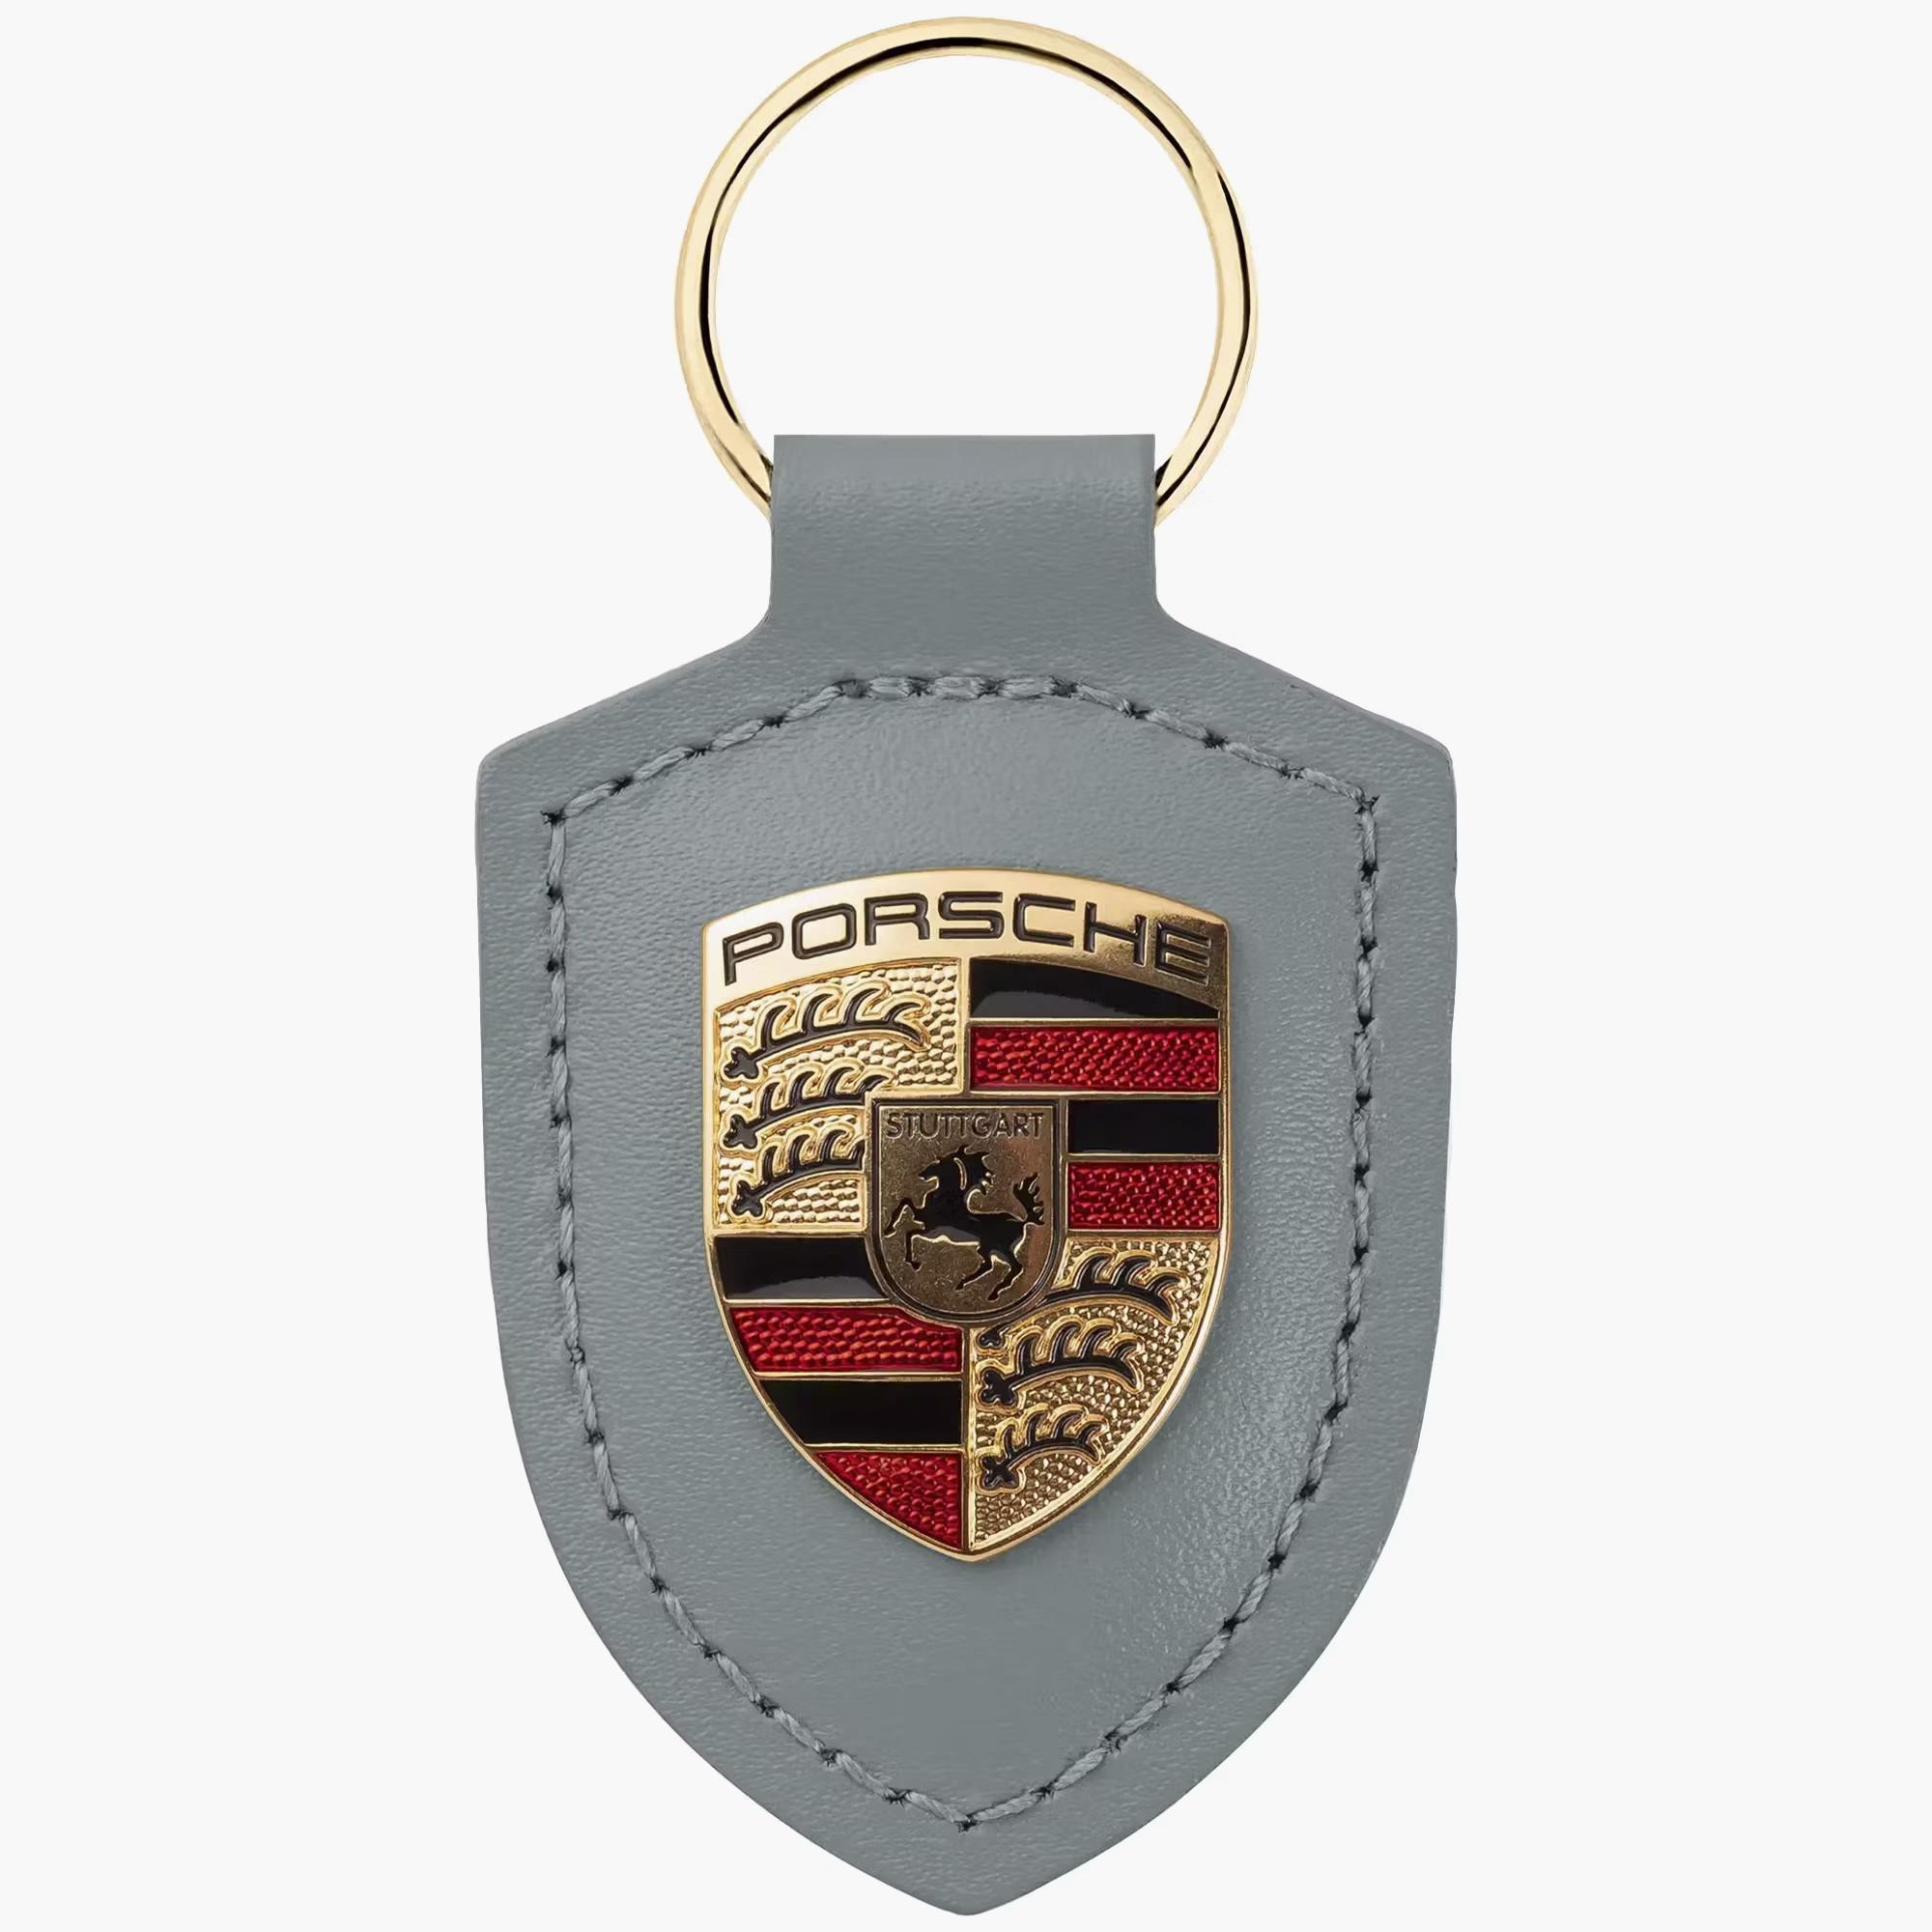 Porte clef Porsche - Équipement auto